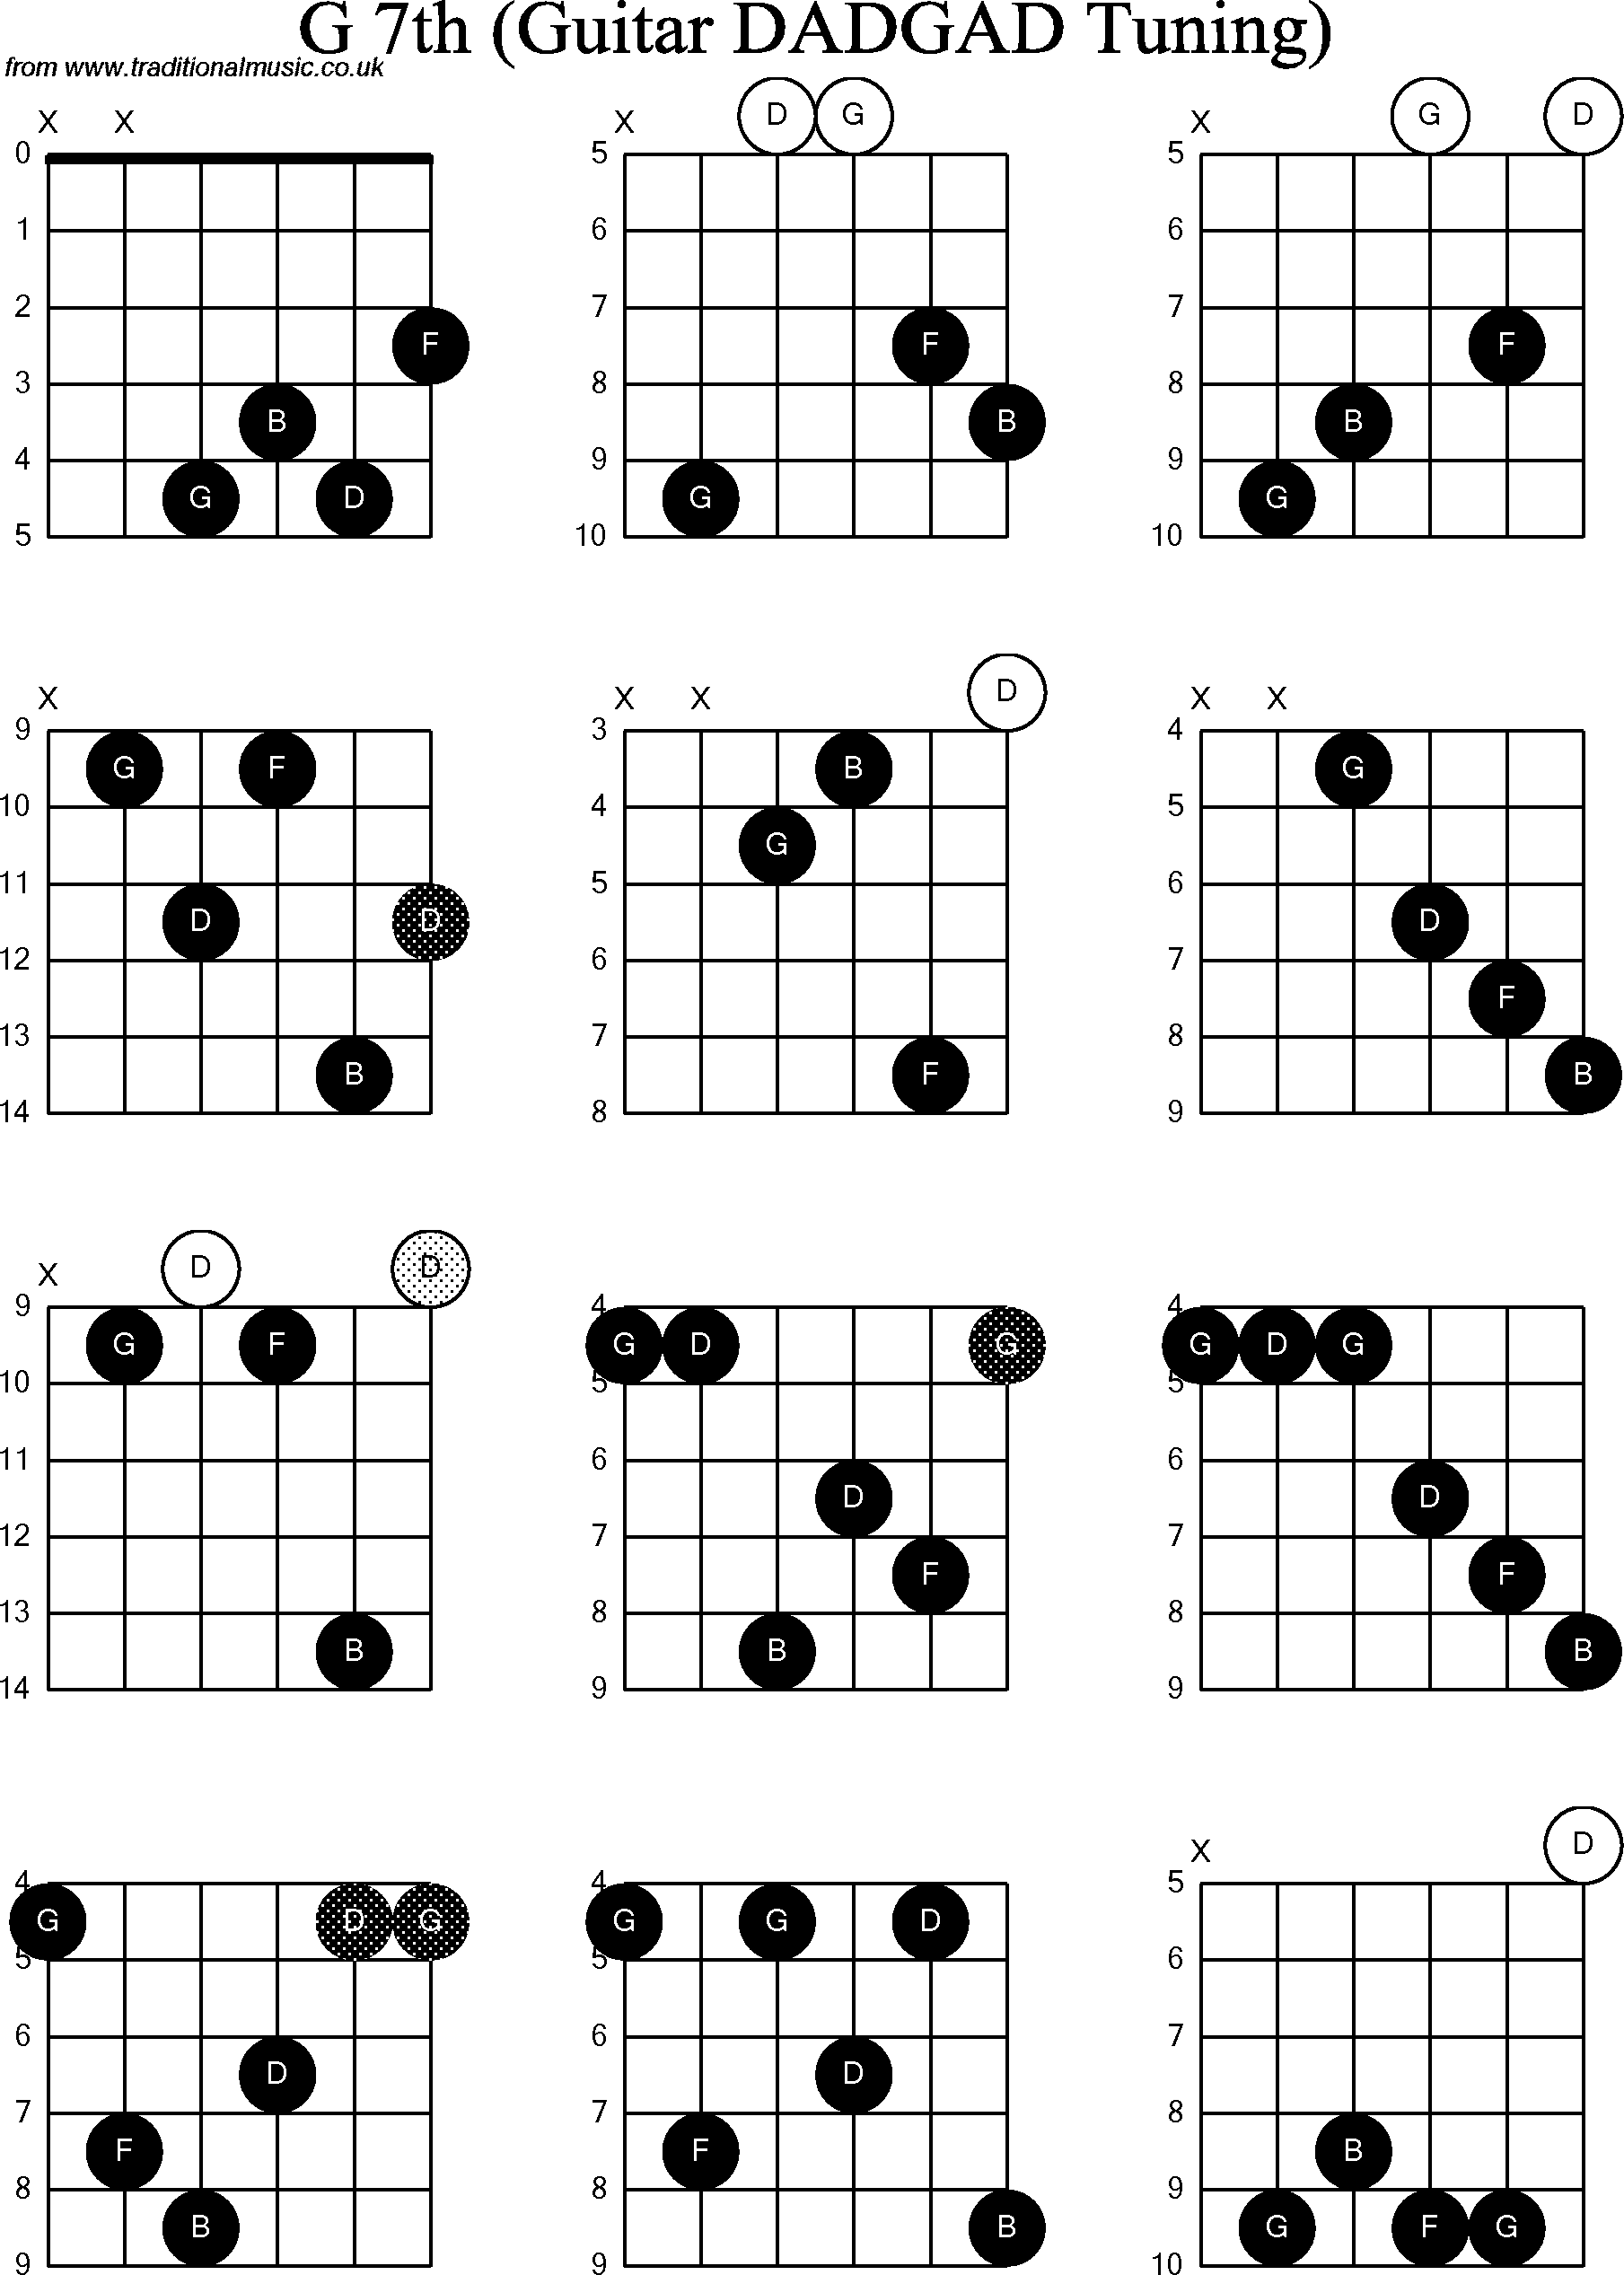 Chord Diagrams for D Modal Guitar(DADGAD), G7th